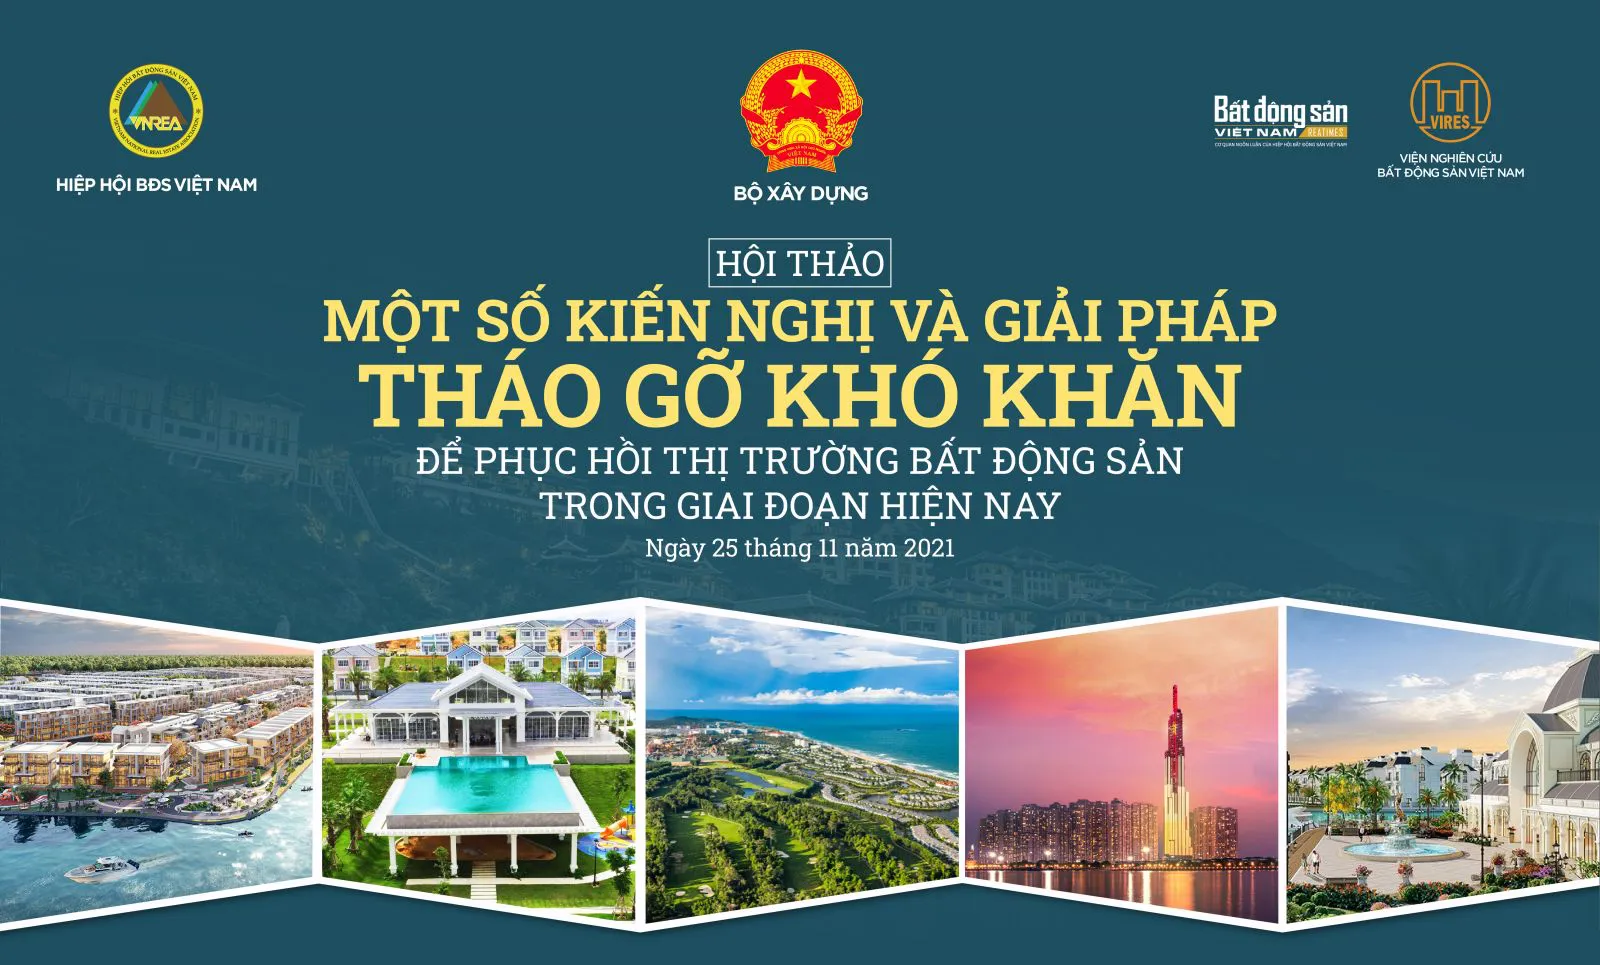 Sau Hội thảo, Hiệp hội Bất động sản Việt Nam sẽ có báo cáo kiến nghị gửi Bộ Xây dựng, Chính phủ, Quốc hội cùng các cơ quan có liên quan để góp phần tháo gỡ vướng mắc, rào cản cho các doanh nghiệp kinh doanh bất động sản./.